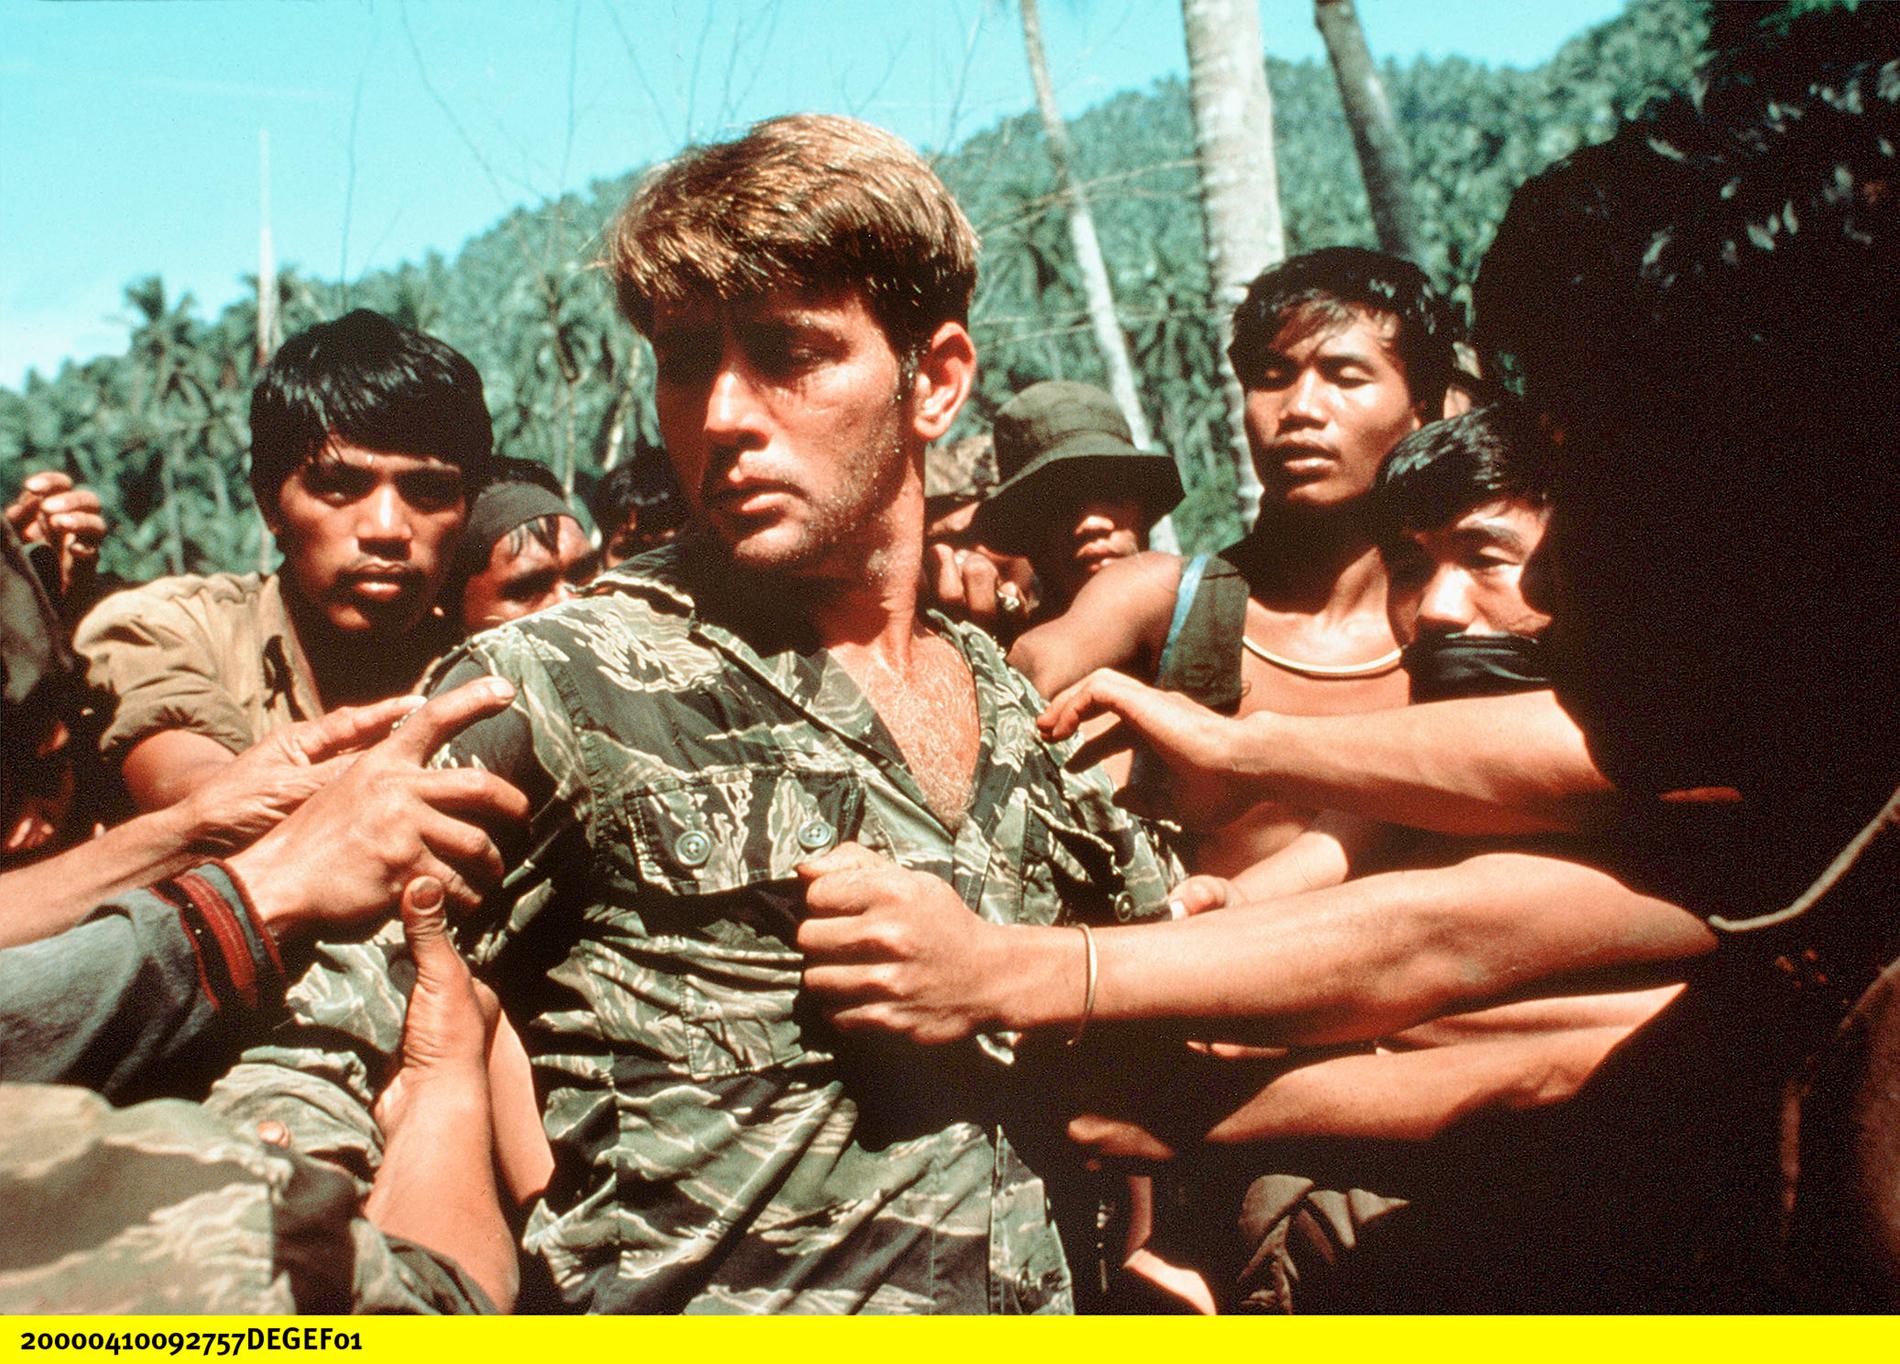 Martin Sheen i filmen Apocalypse now (1979), baserad på Joseph Conrads Mörkrets hjärta.